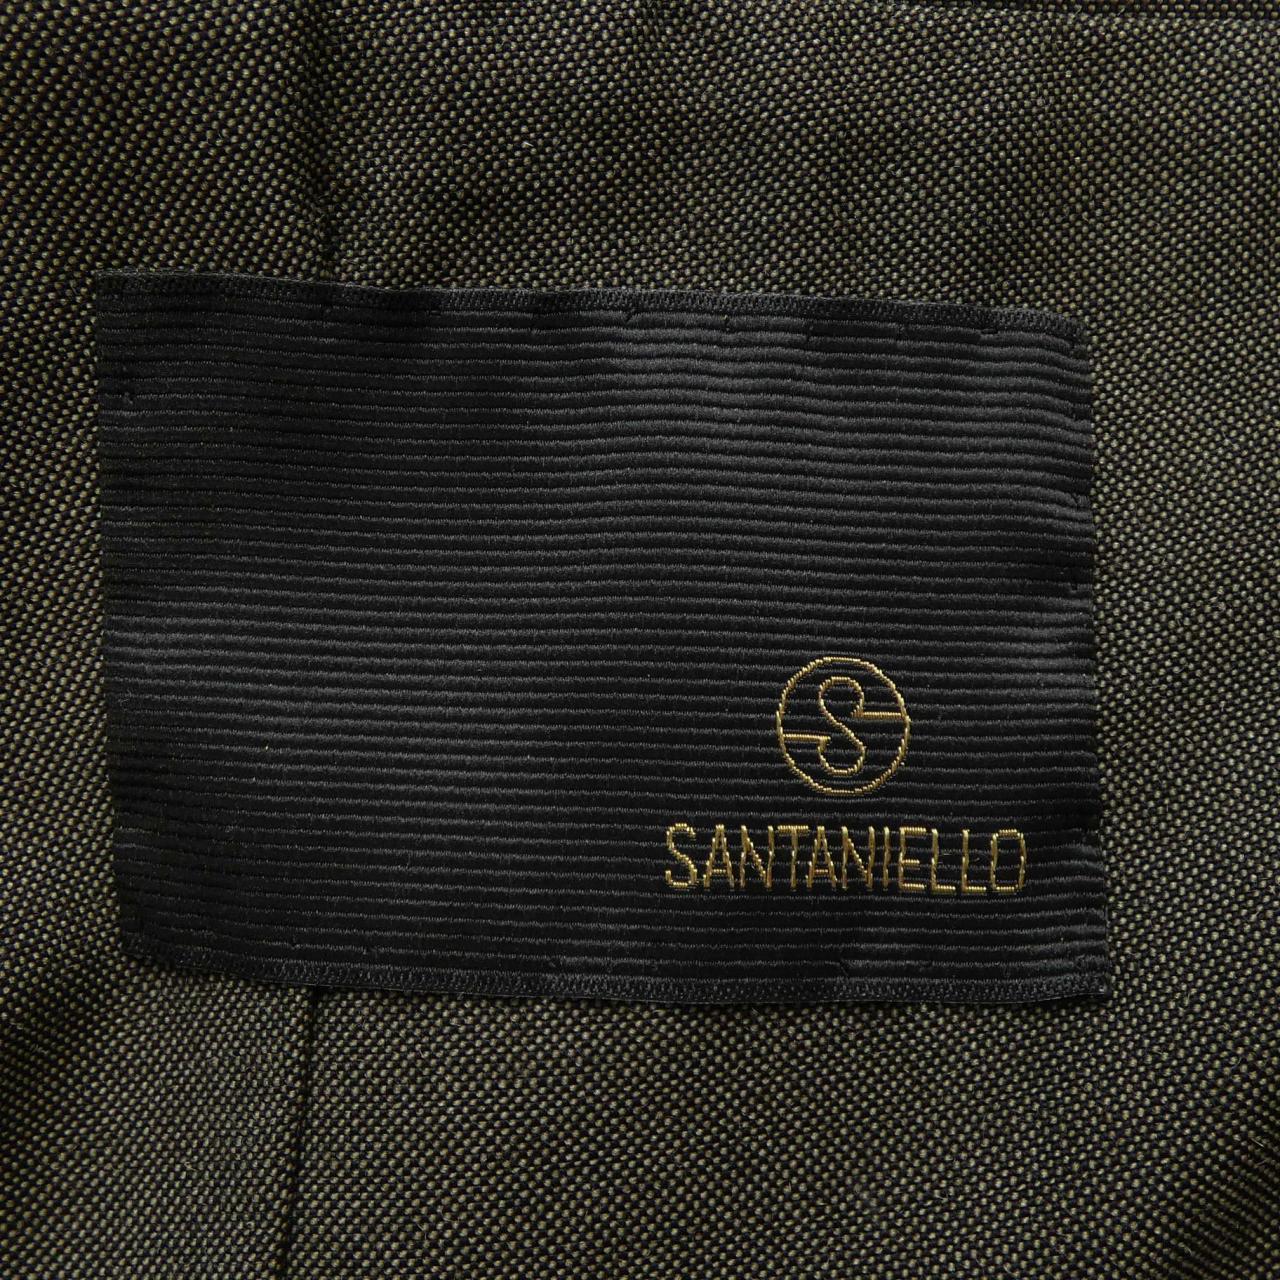 サンタニエッロ SANTANIELLO ジャケット